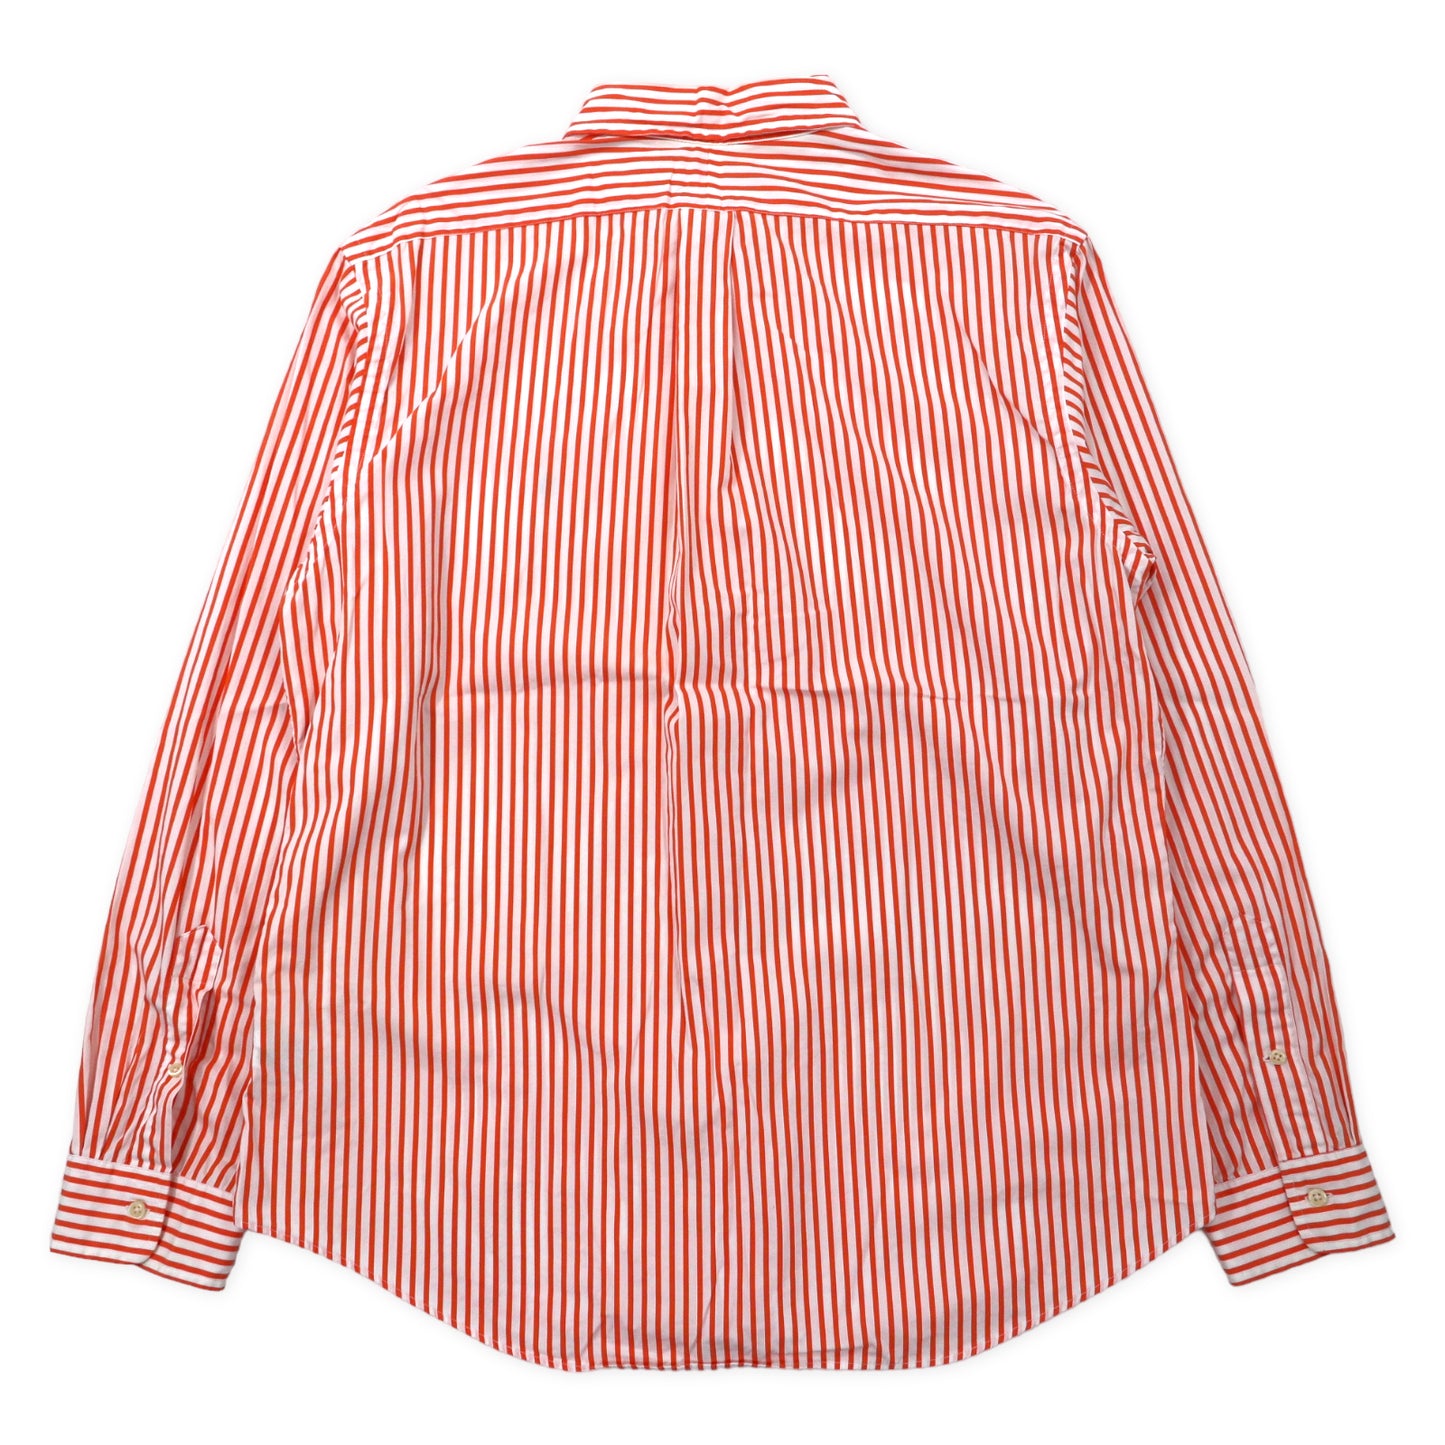 Ralph Lauren ボタンダウンシャツ XL オレンジ ホワイト ストライプ コットン スモールポニー刺繍